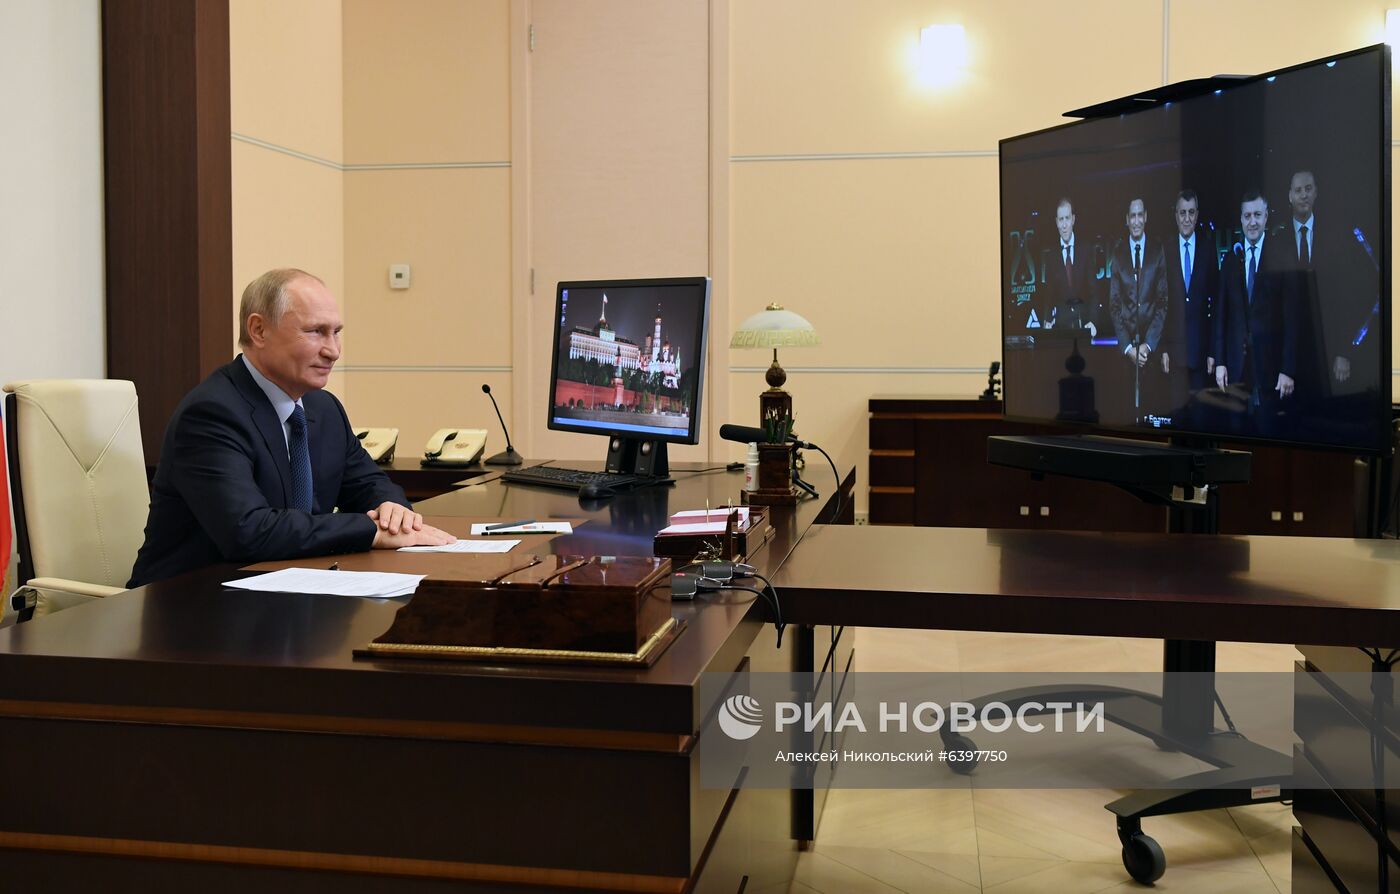 Президент РФ В. Путин принял участие в церемонии открытия цеха ООО "Братскхимсинтез"